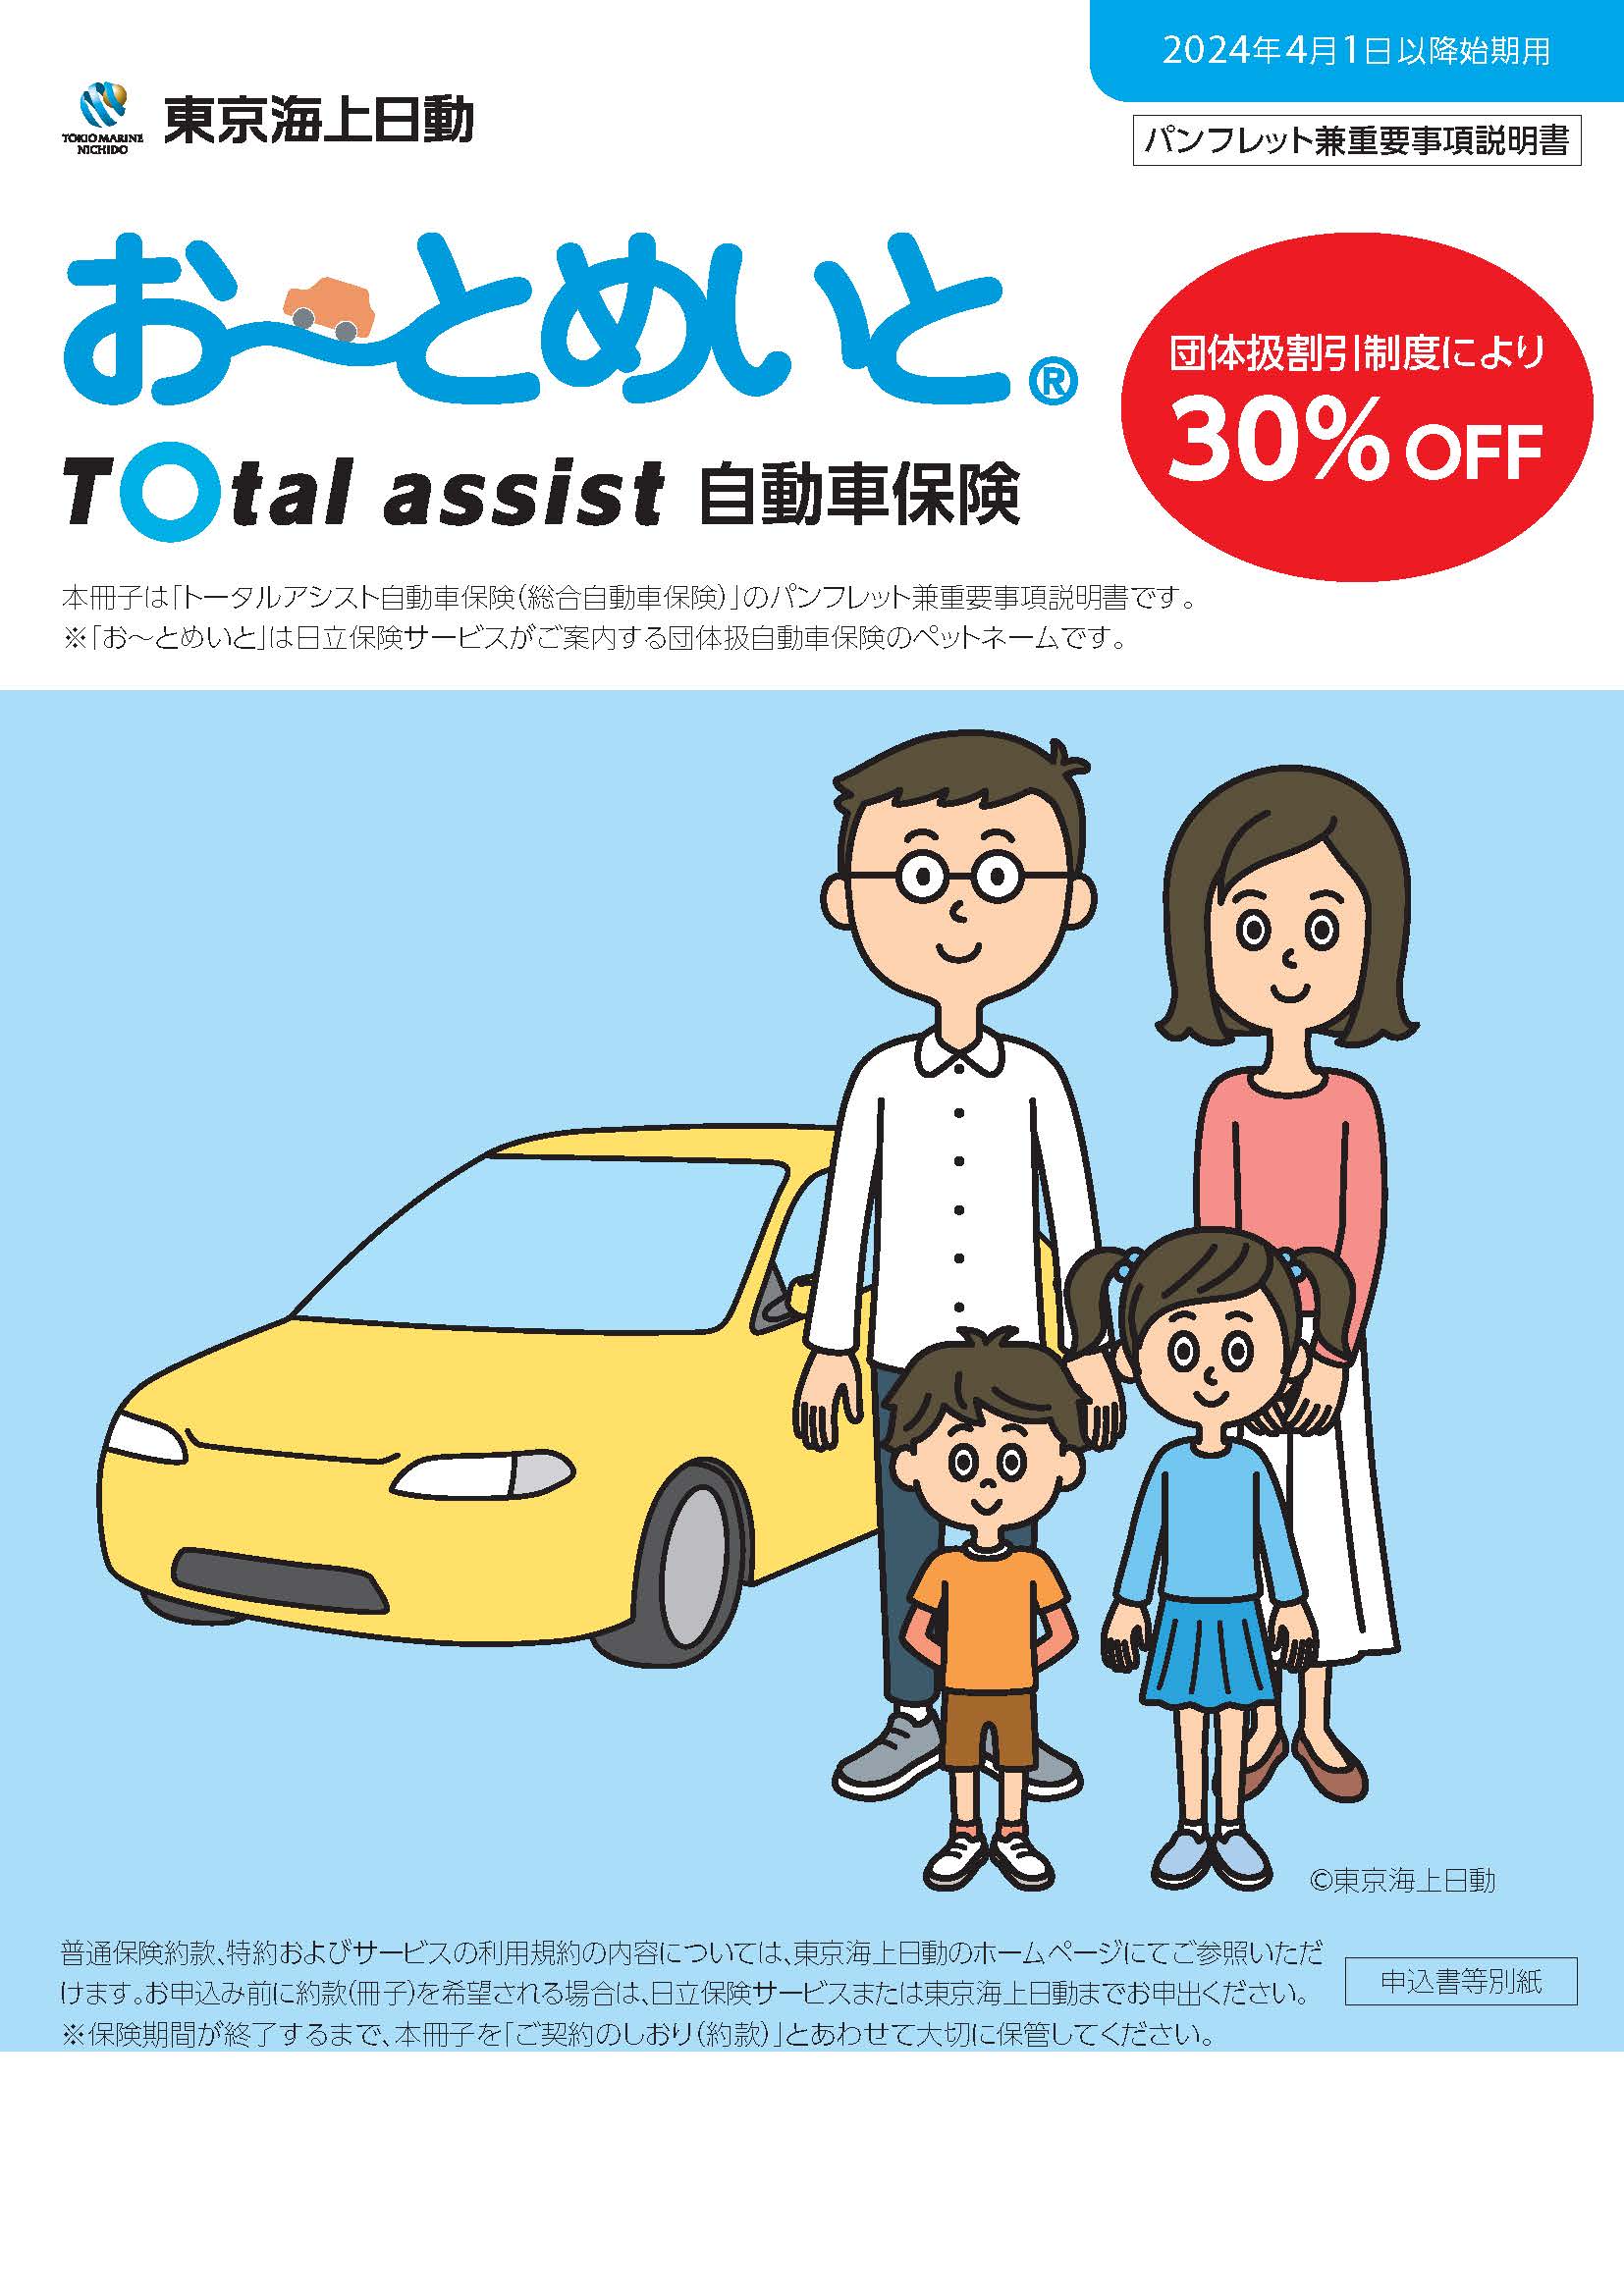 Total assist自動車保険（総合自動車保険）